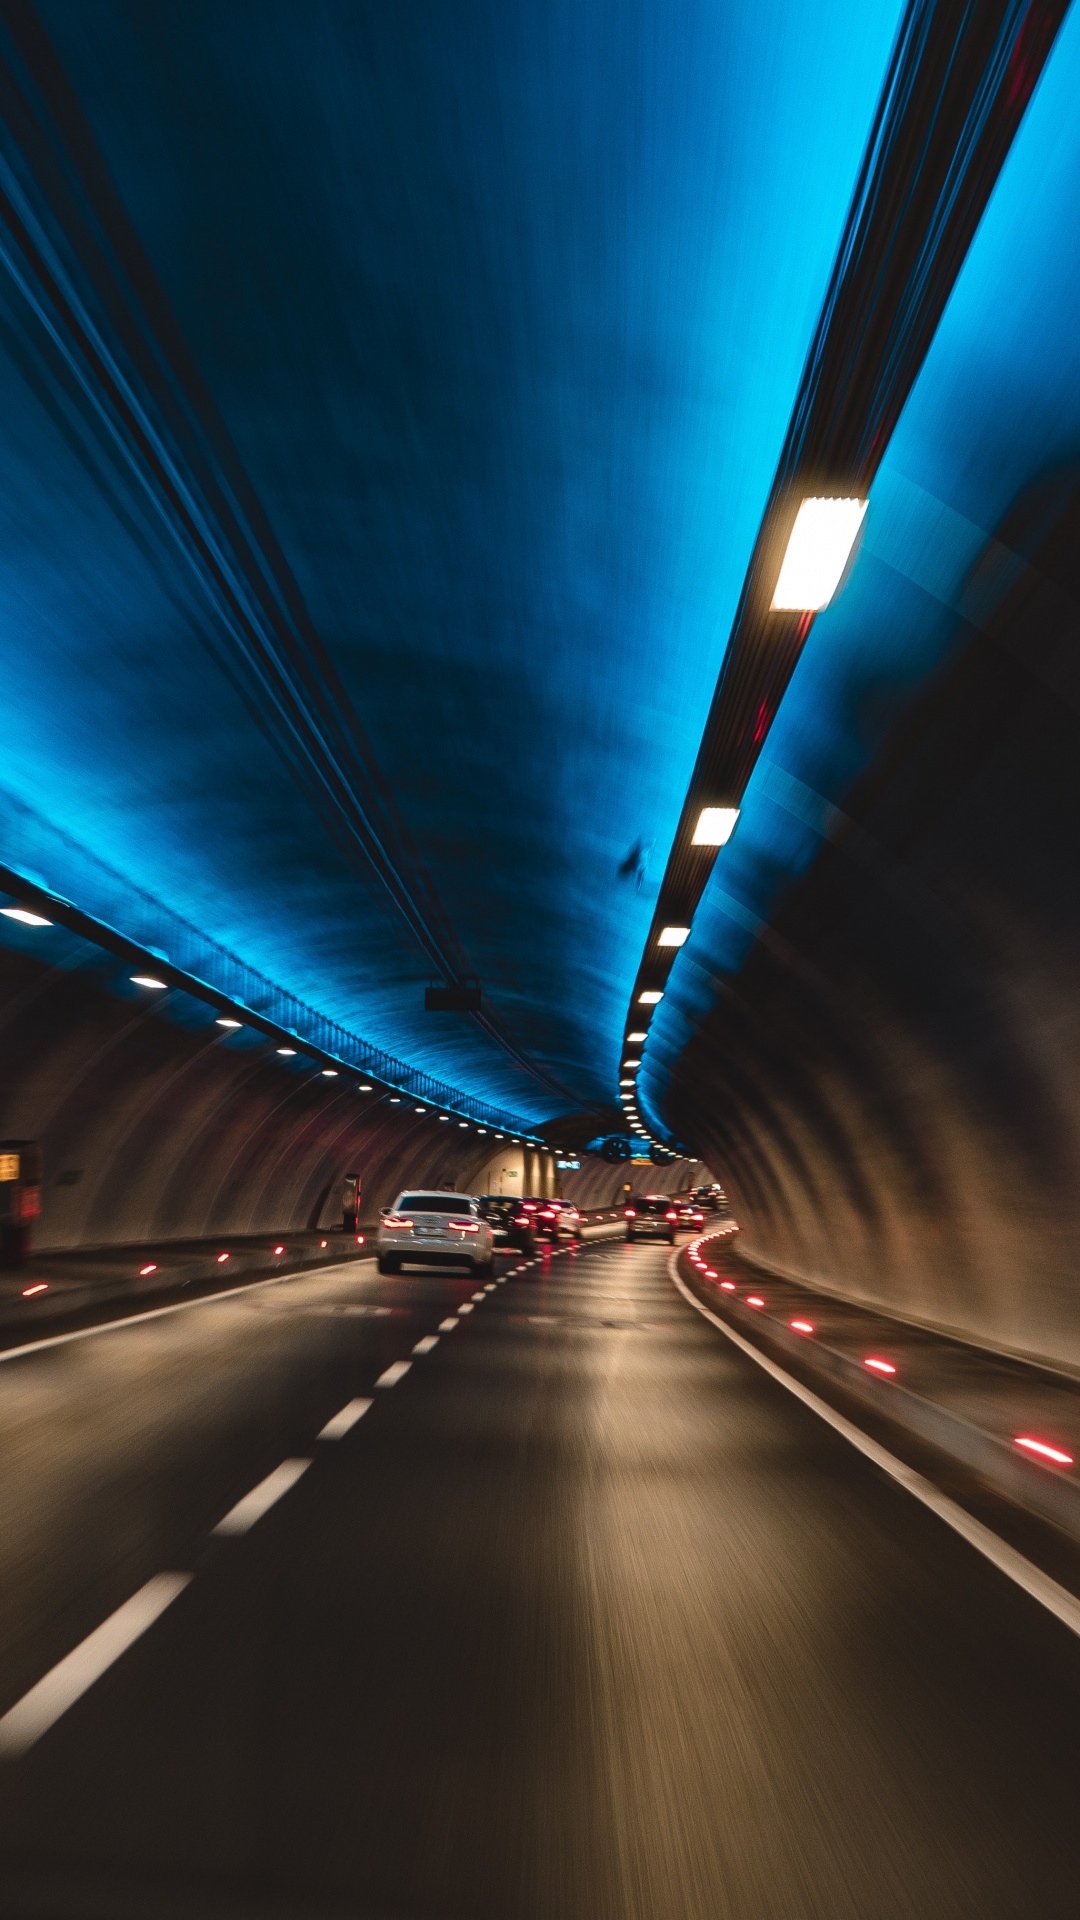 隧道, 高速公路, 车道, 光, 基础设施 壁纸 1080x1920 允许